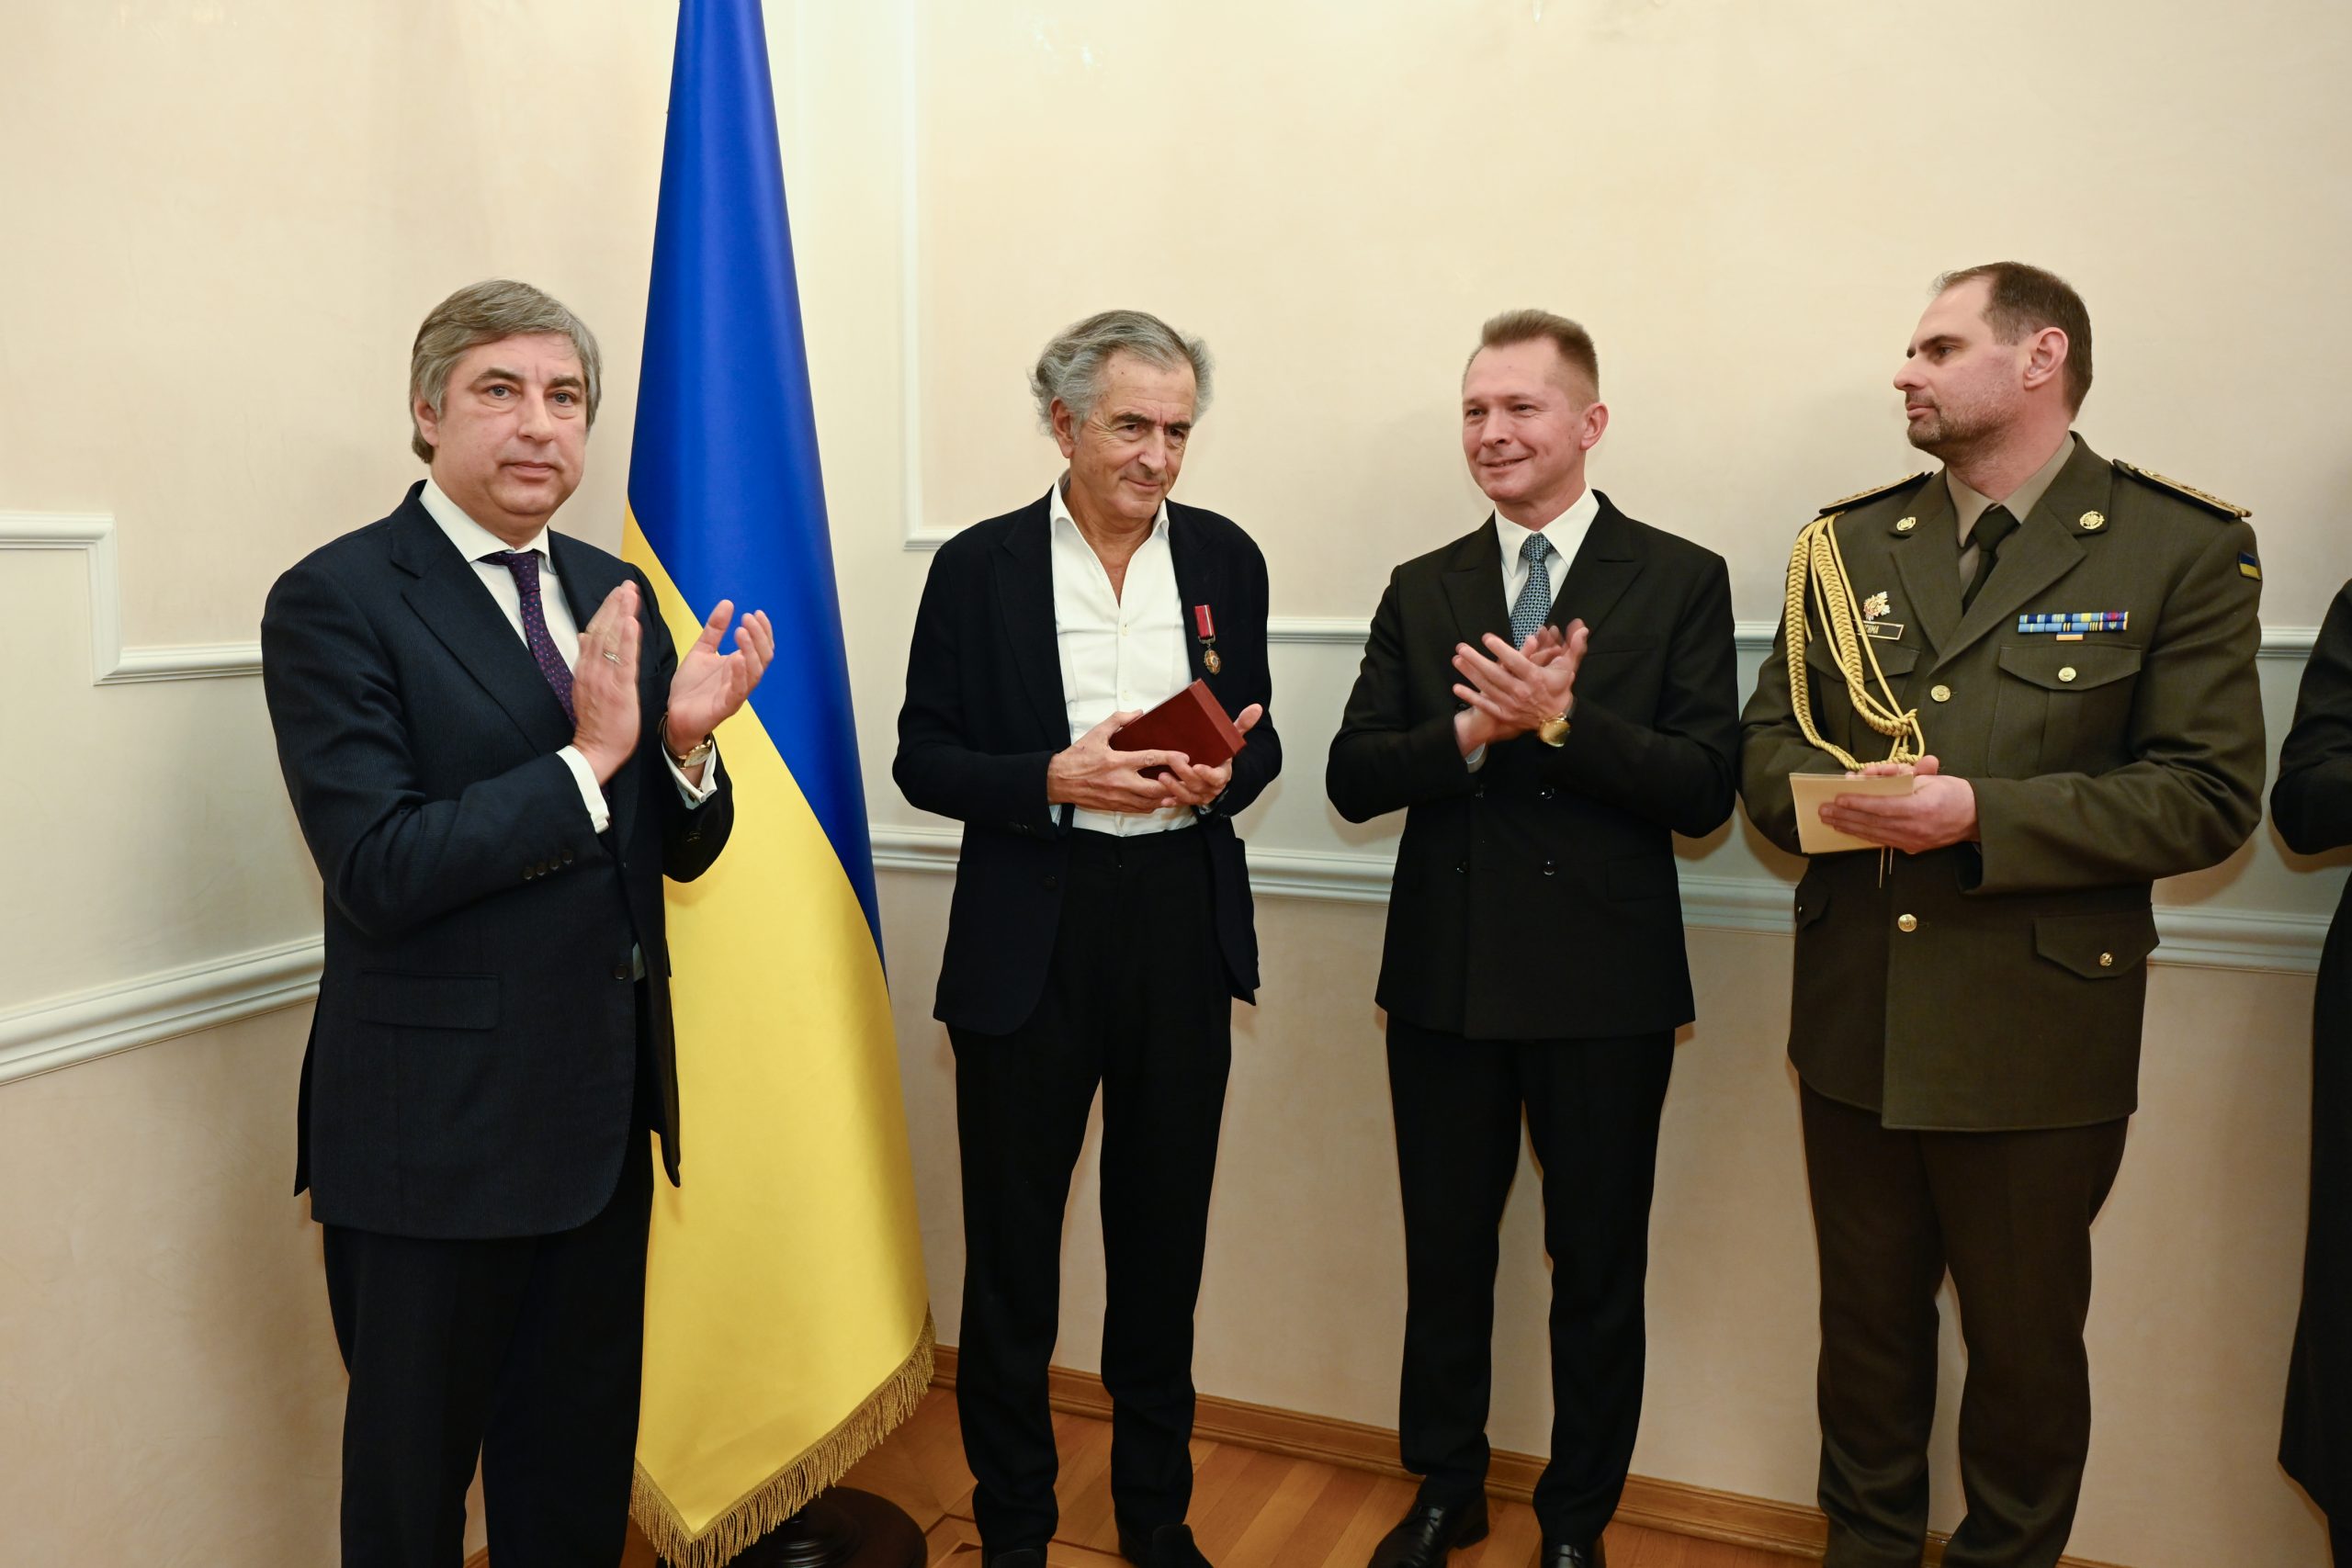 BHL vient de recevoir l'insigne de Chevalier de l'Ordre du Mérite d'Ukraine. À ses côtés, Vadym Omelchenko, ambassadeur d'Ukraine en France. Ils sont devant un drapeau ukrainien`